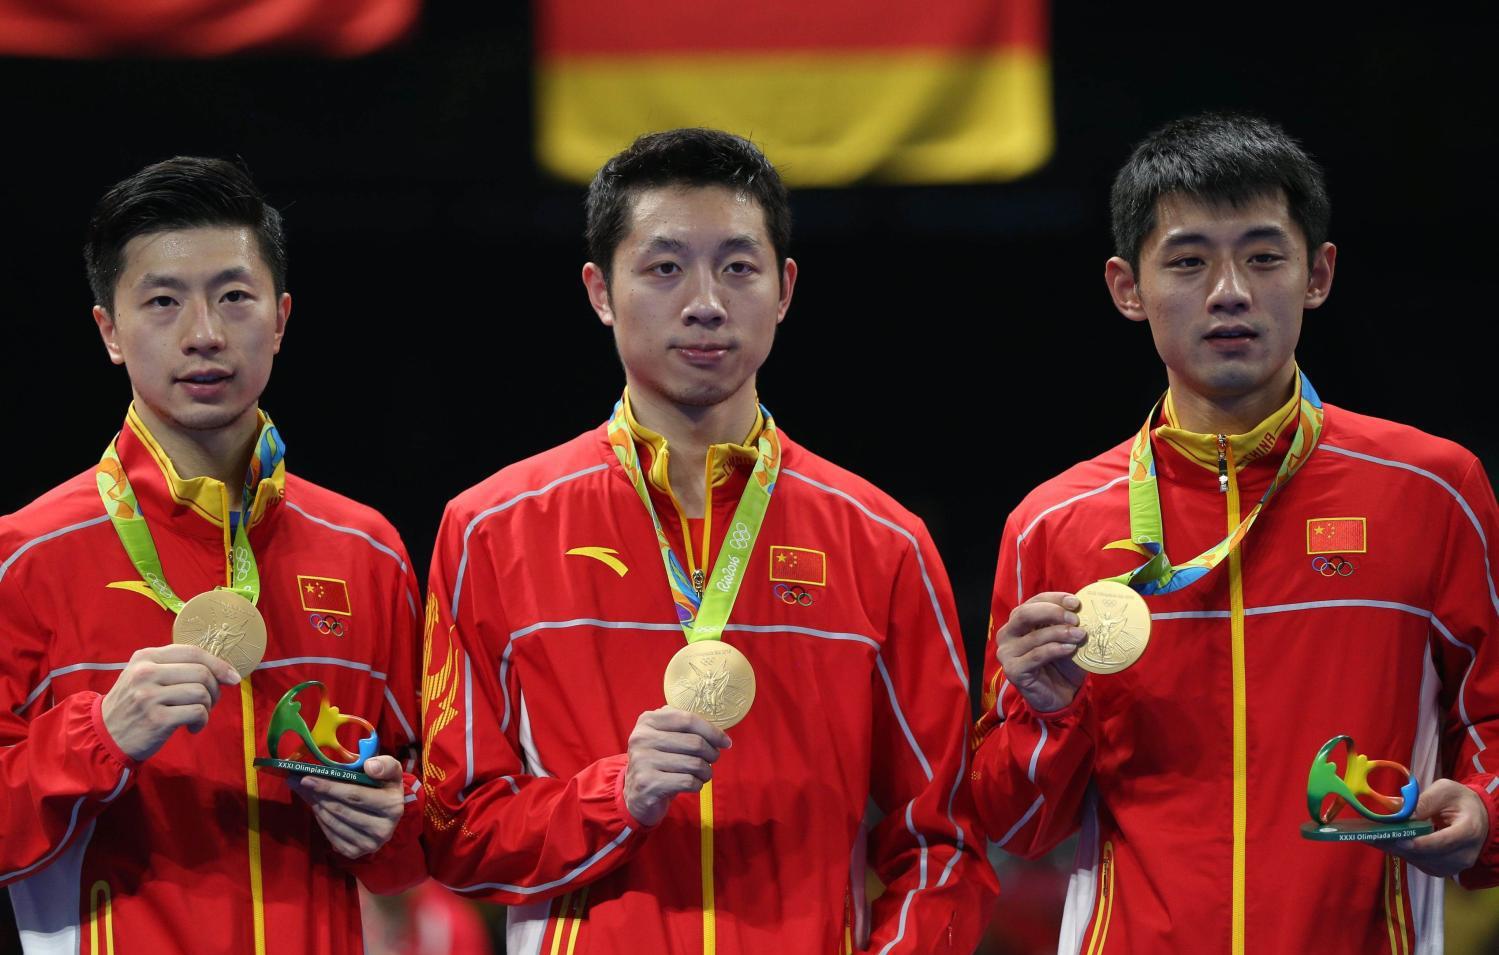 韩媒: 中国乒乓球队的世界老大地位正在动摇!